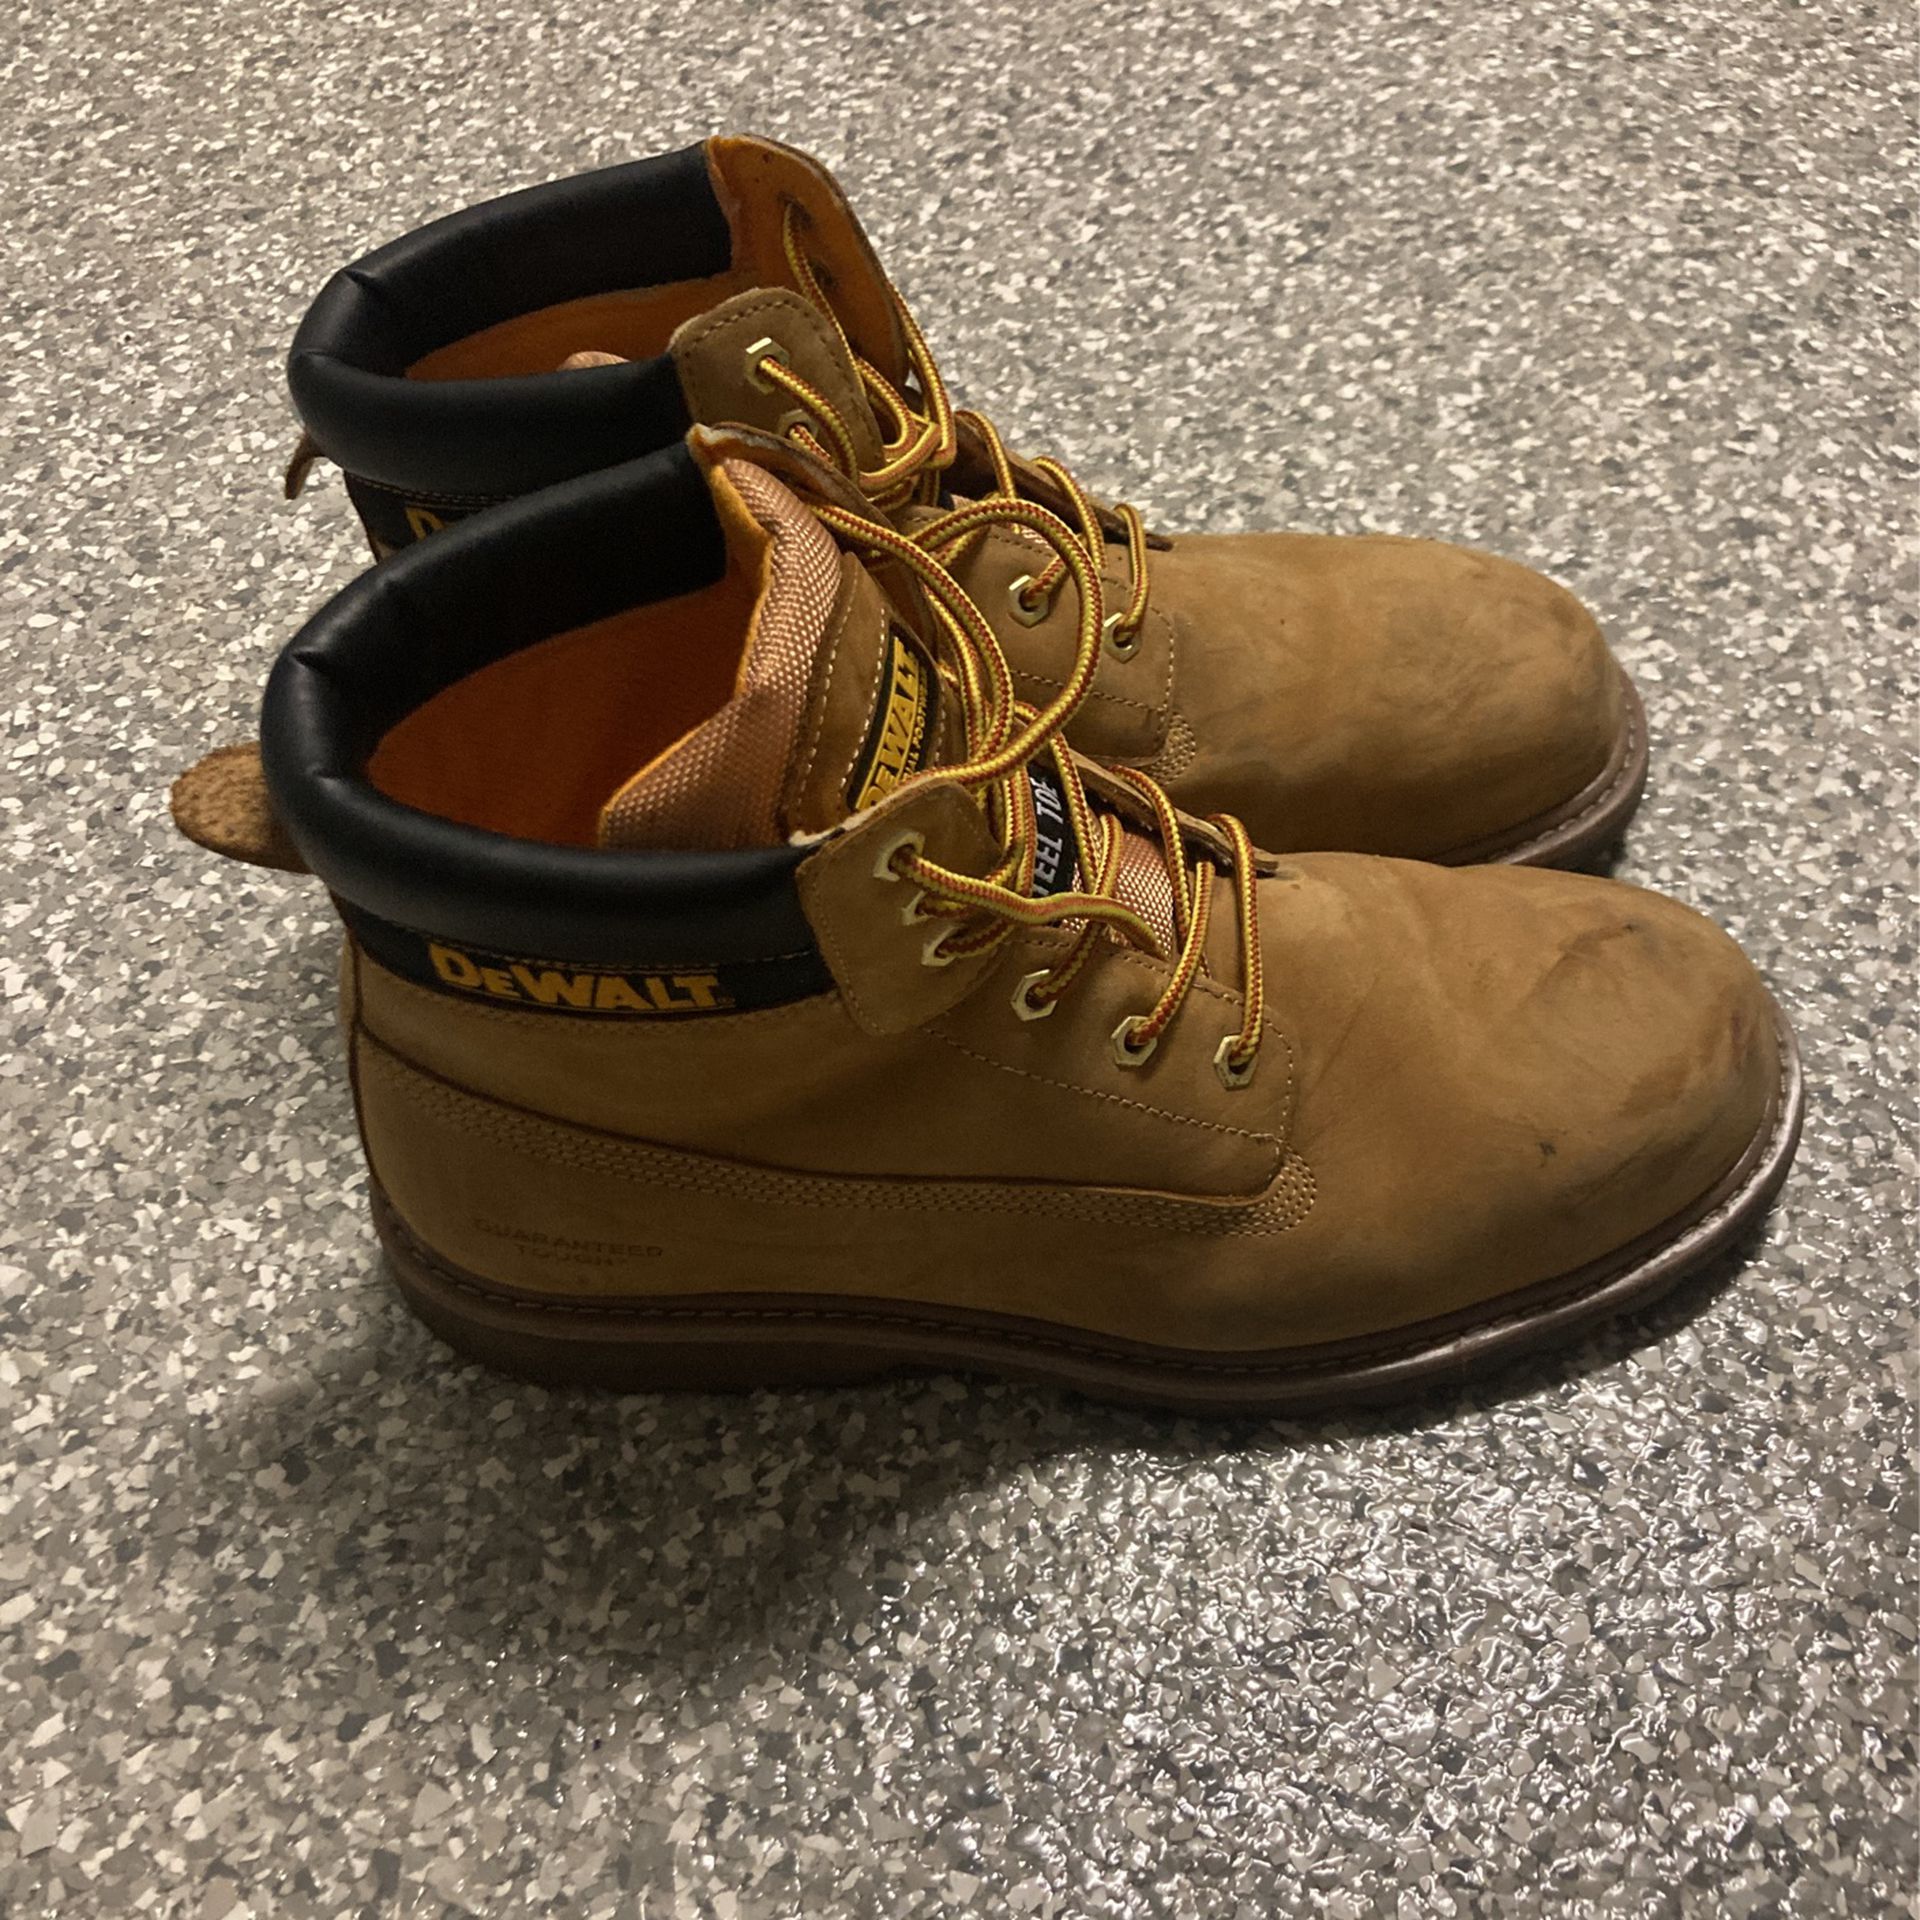 DeWalt work boots size 12